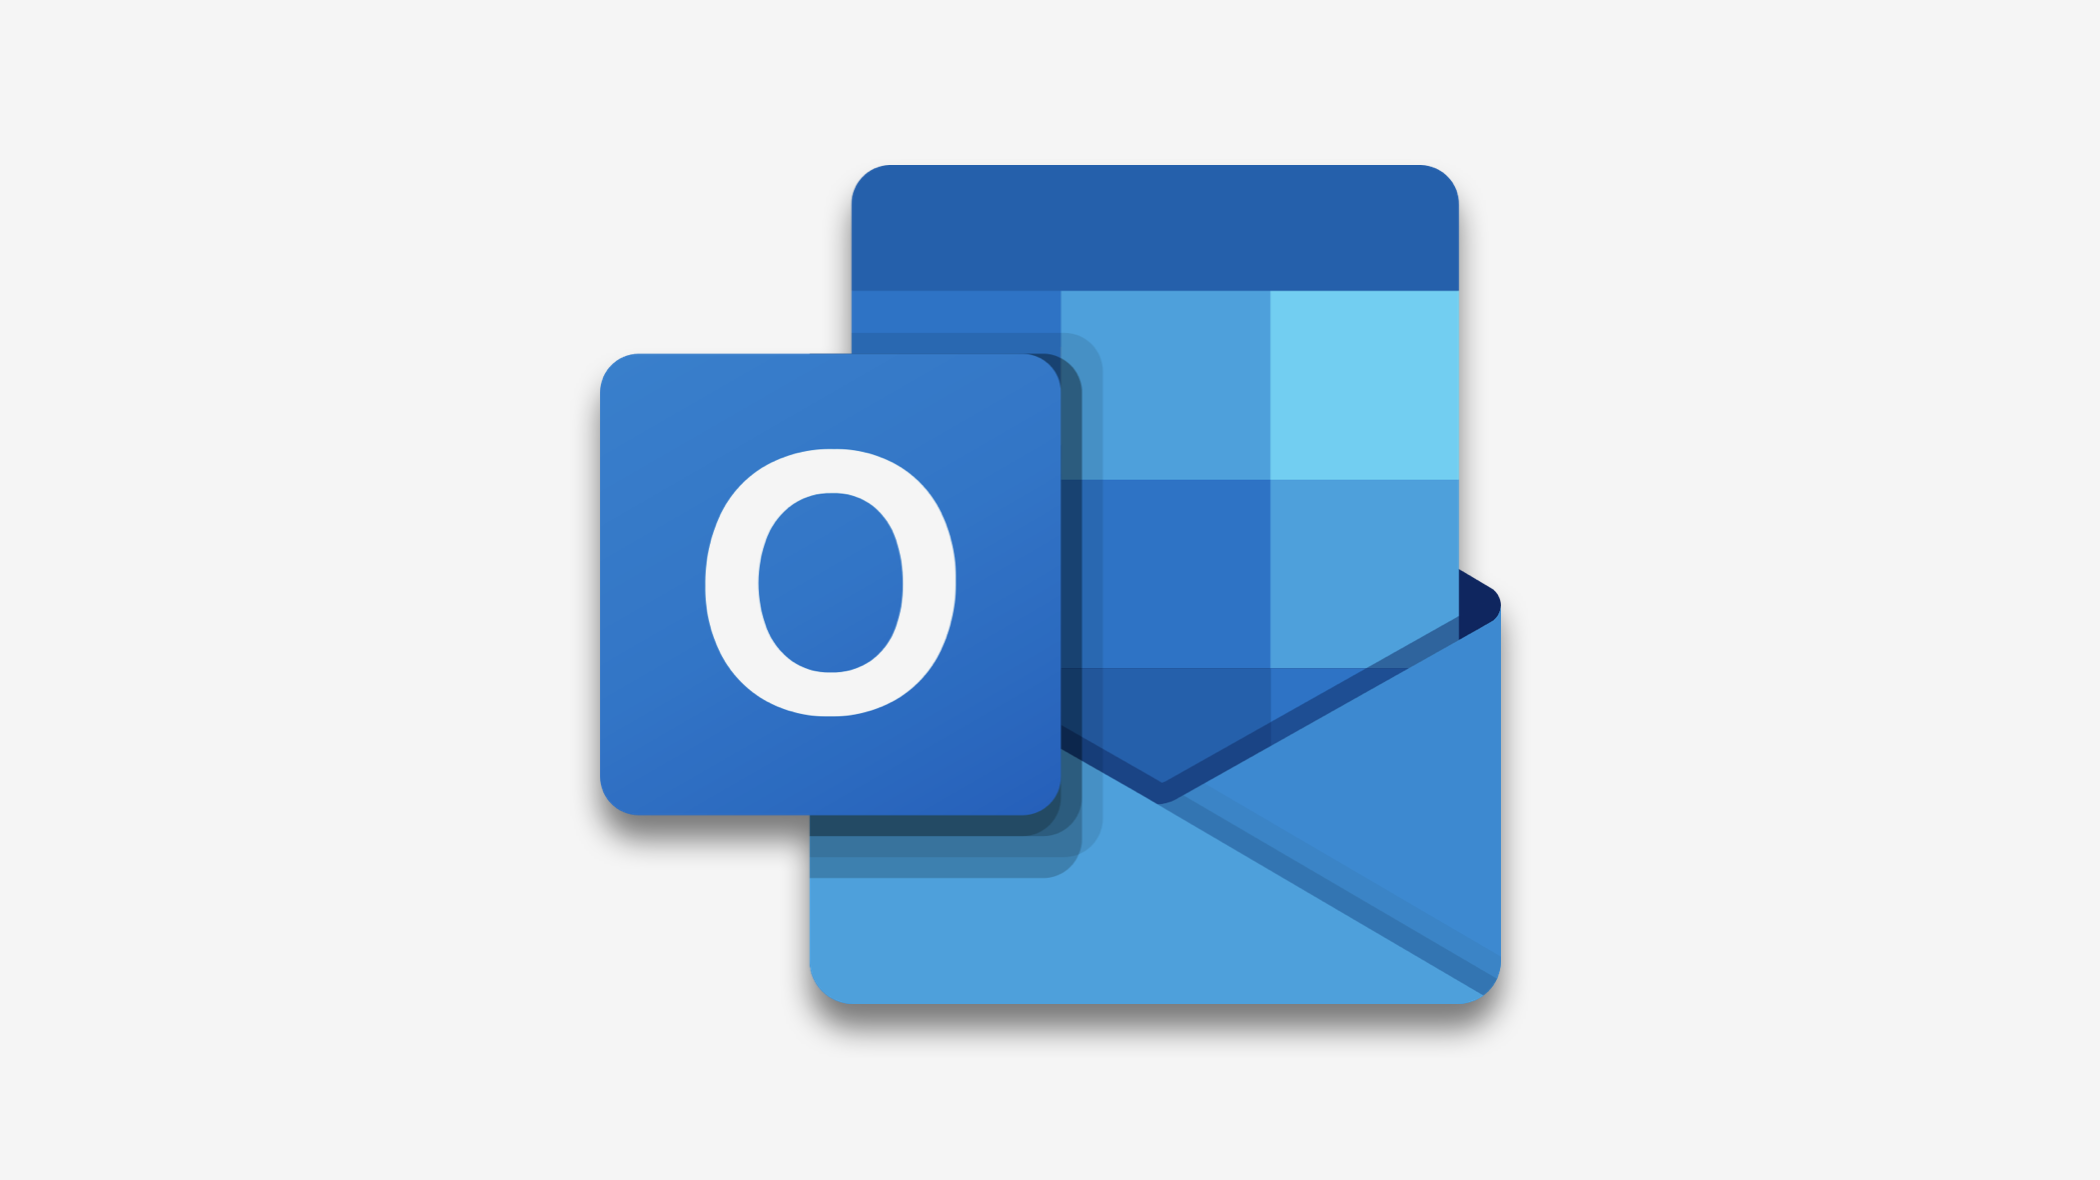 Outlook-Suche funktioniert nach Windows-Update nicht mehr - was tun? |  heise online